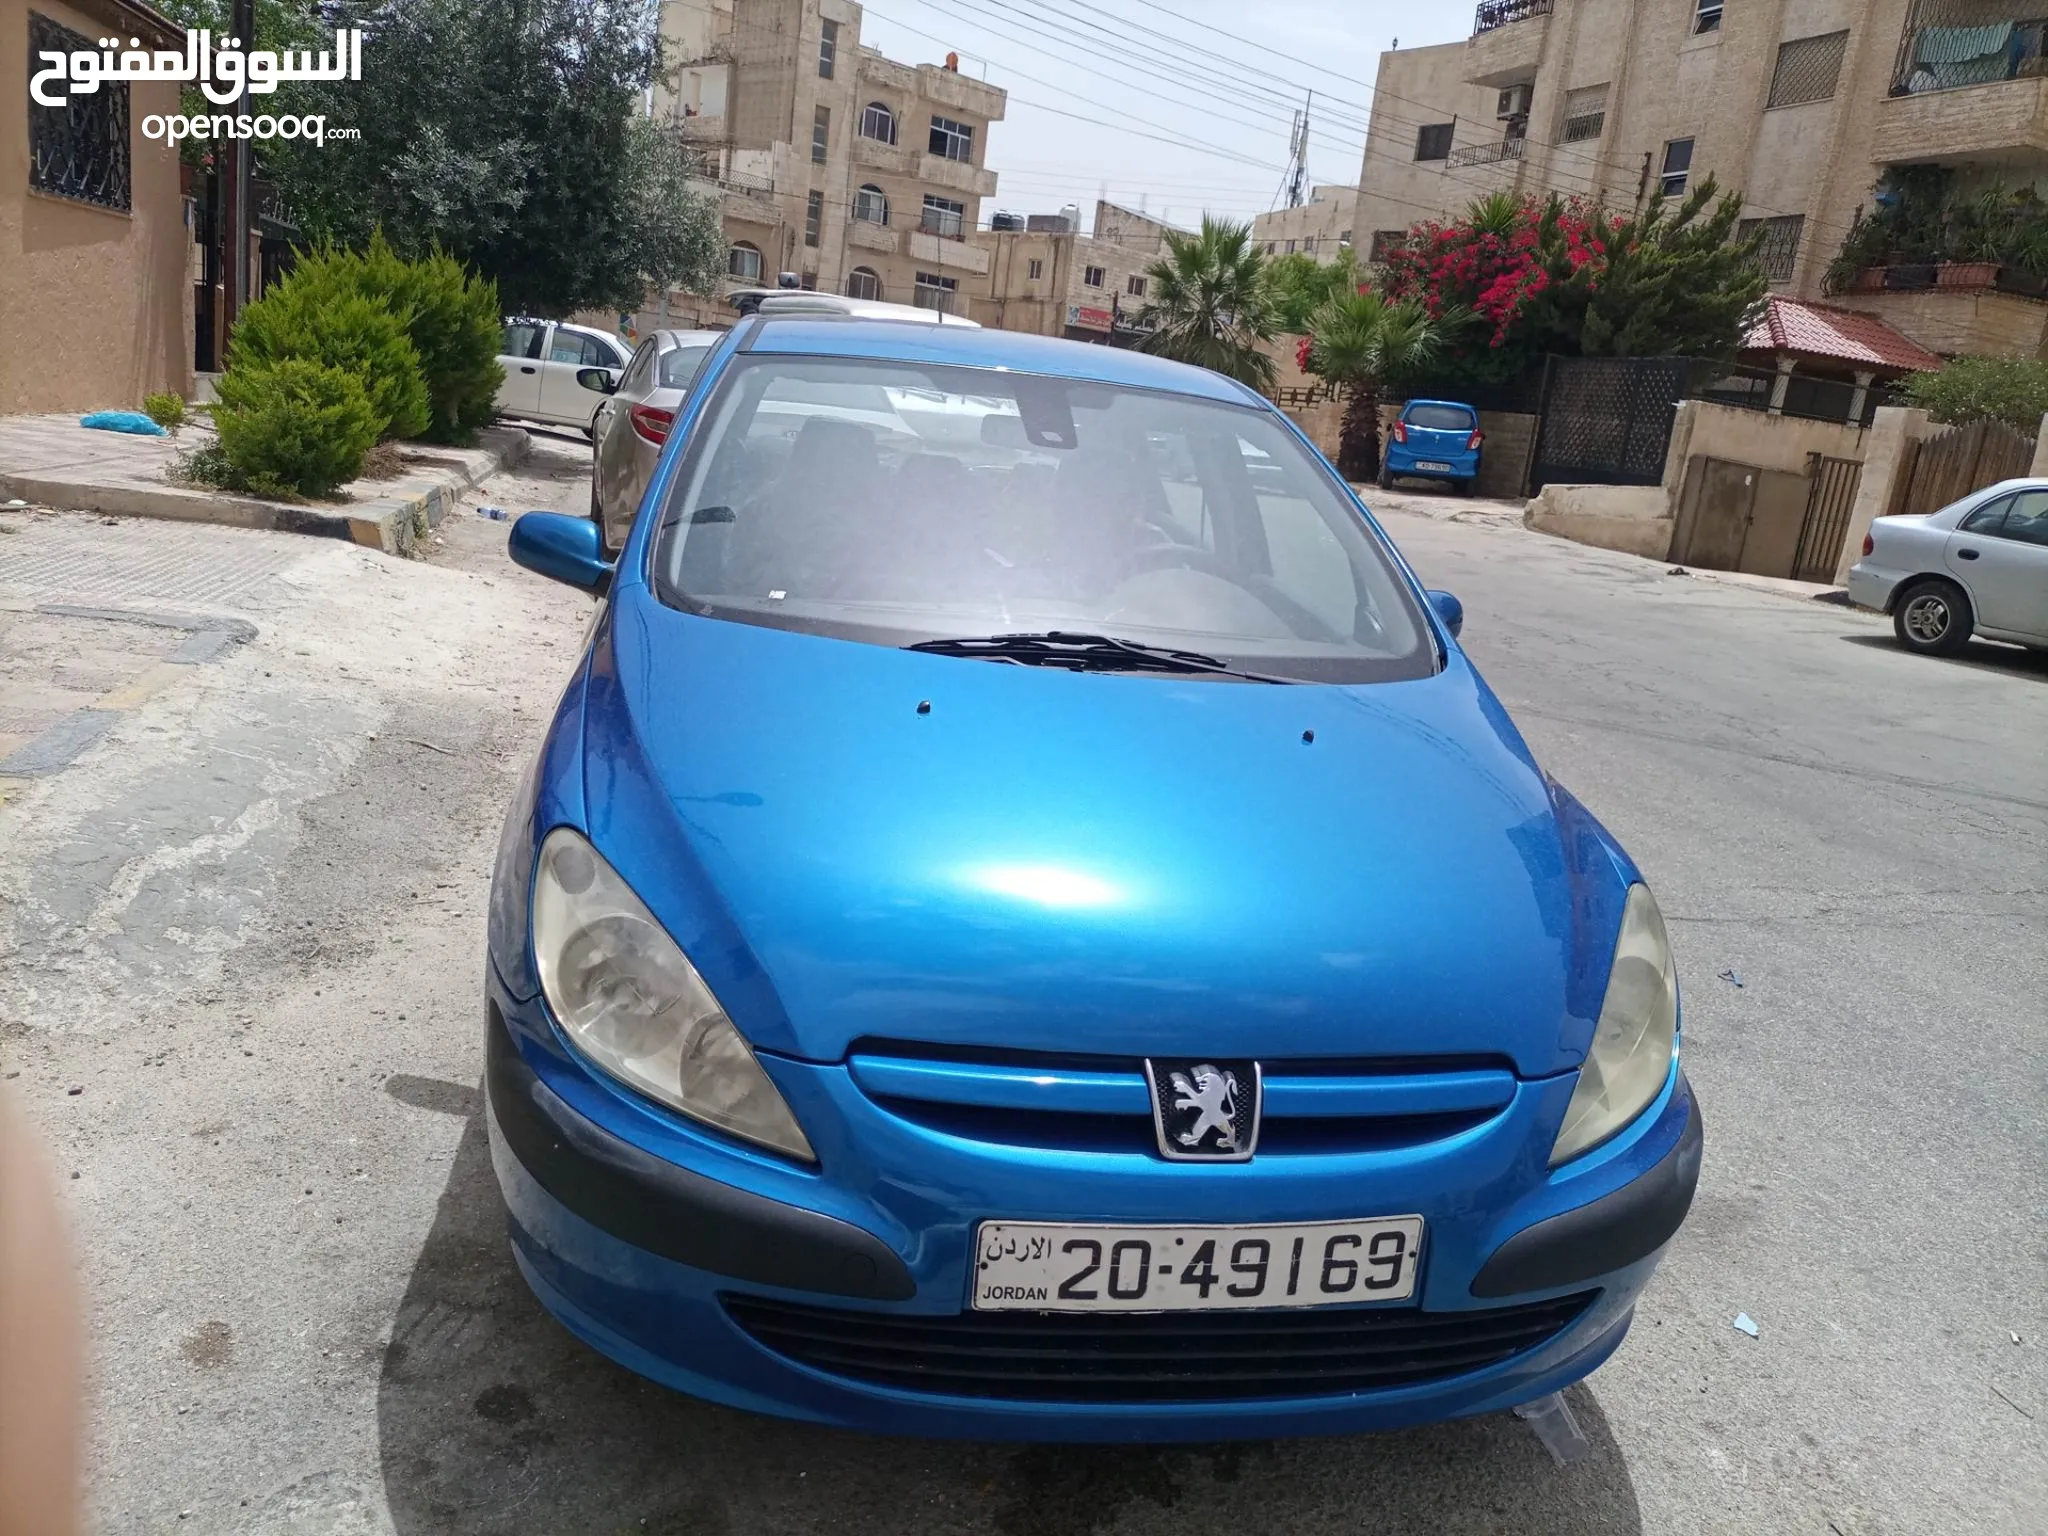 سيارات ومركبات : سيارات للبيع : بيجو 307 : (صفحة 2) : الأردن | السوق المفتوح